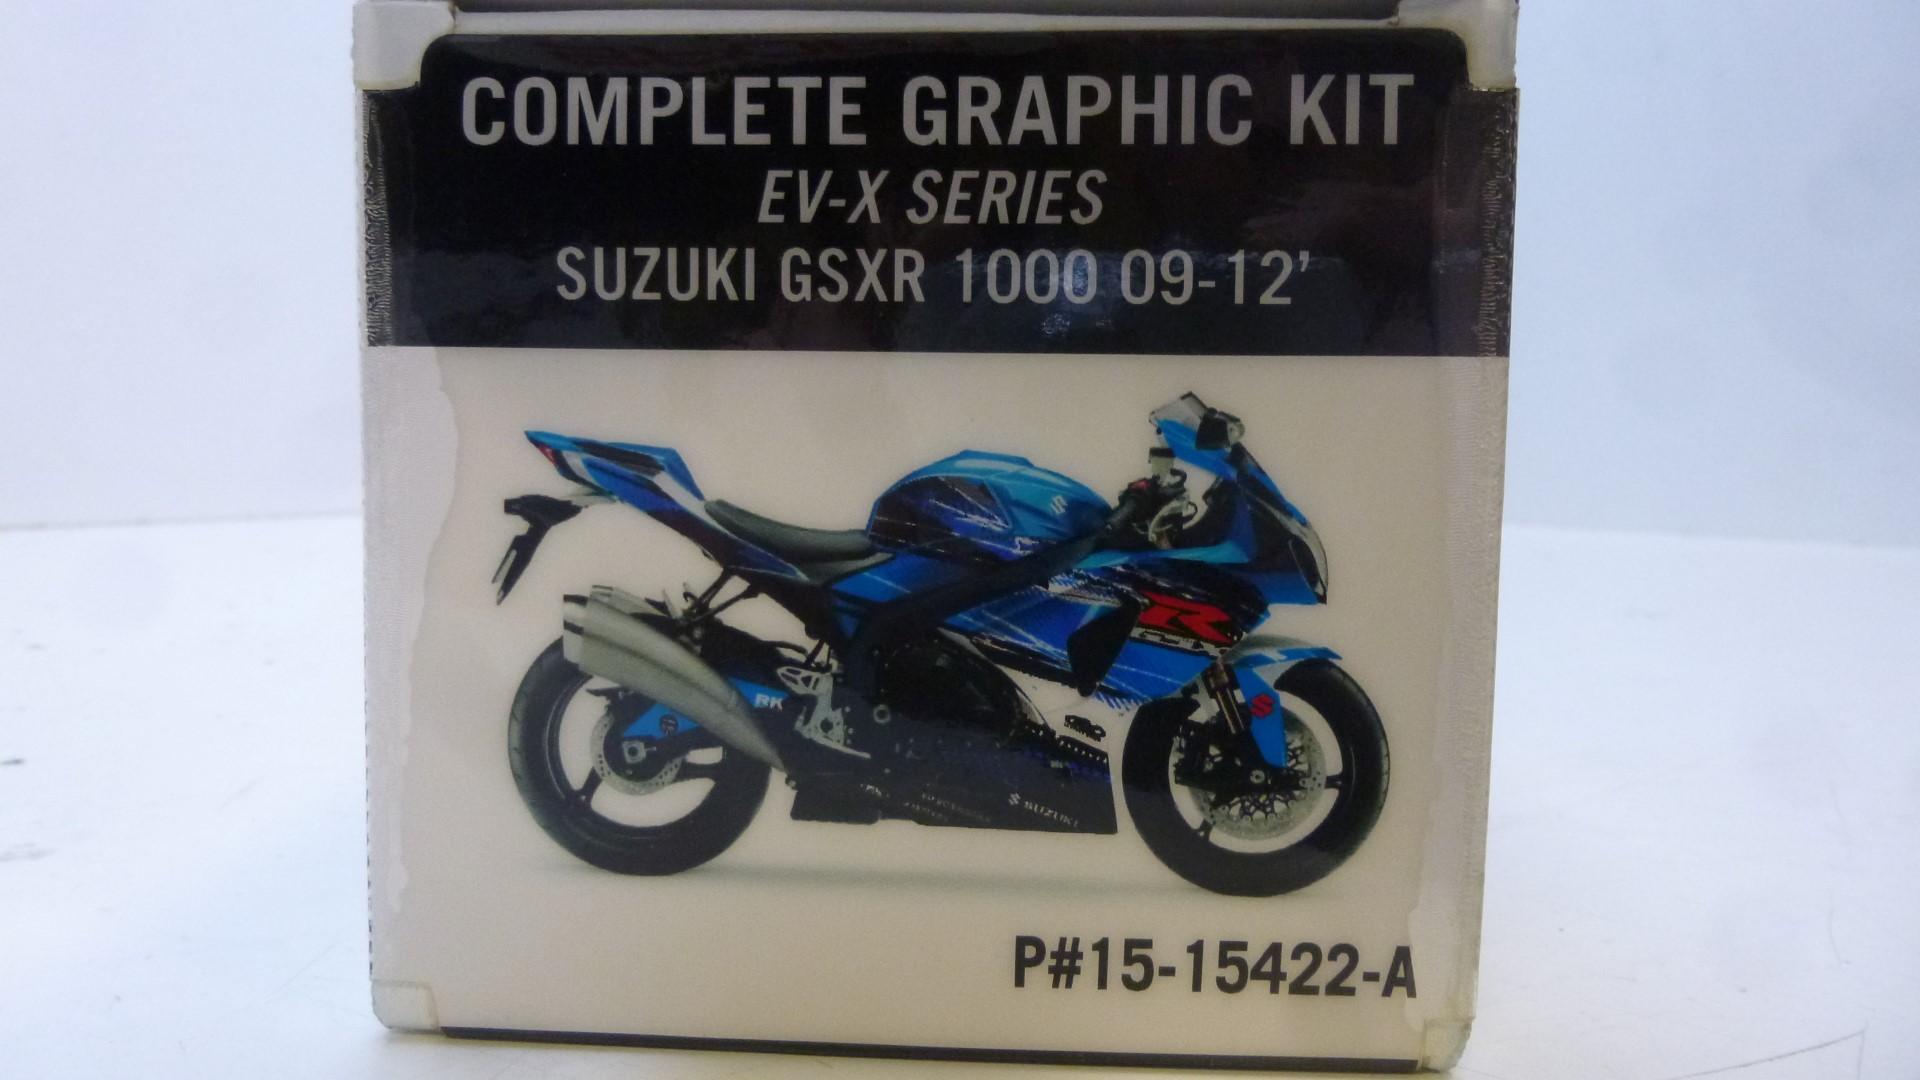 Dekorsatz Aufkleber Sticker Verkleidung graphic kit für Suzuki Gsxr 1000 09-12